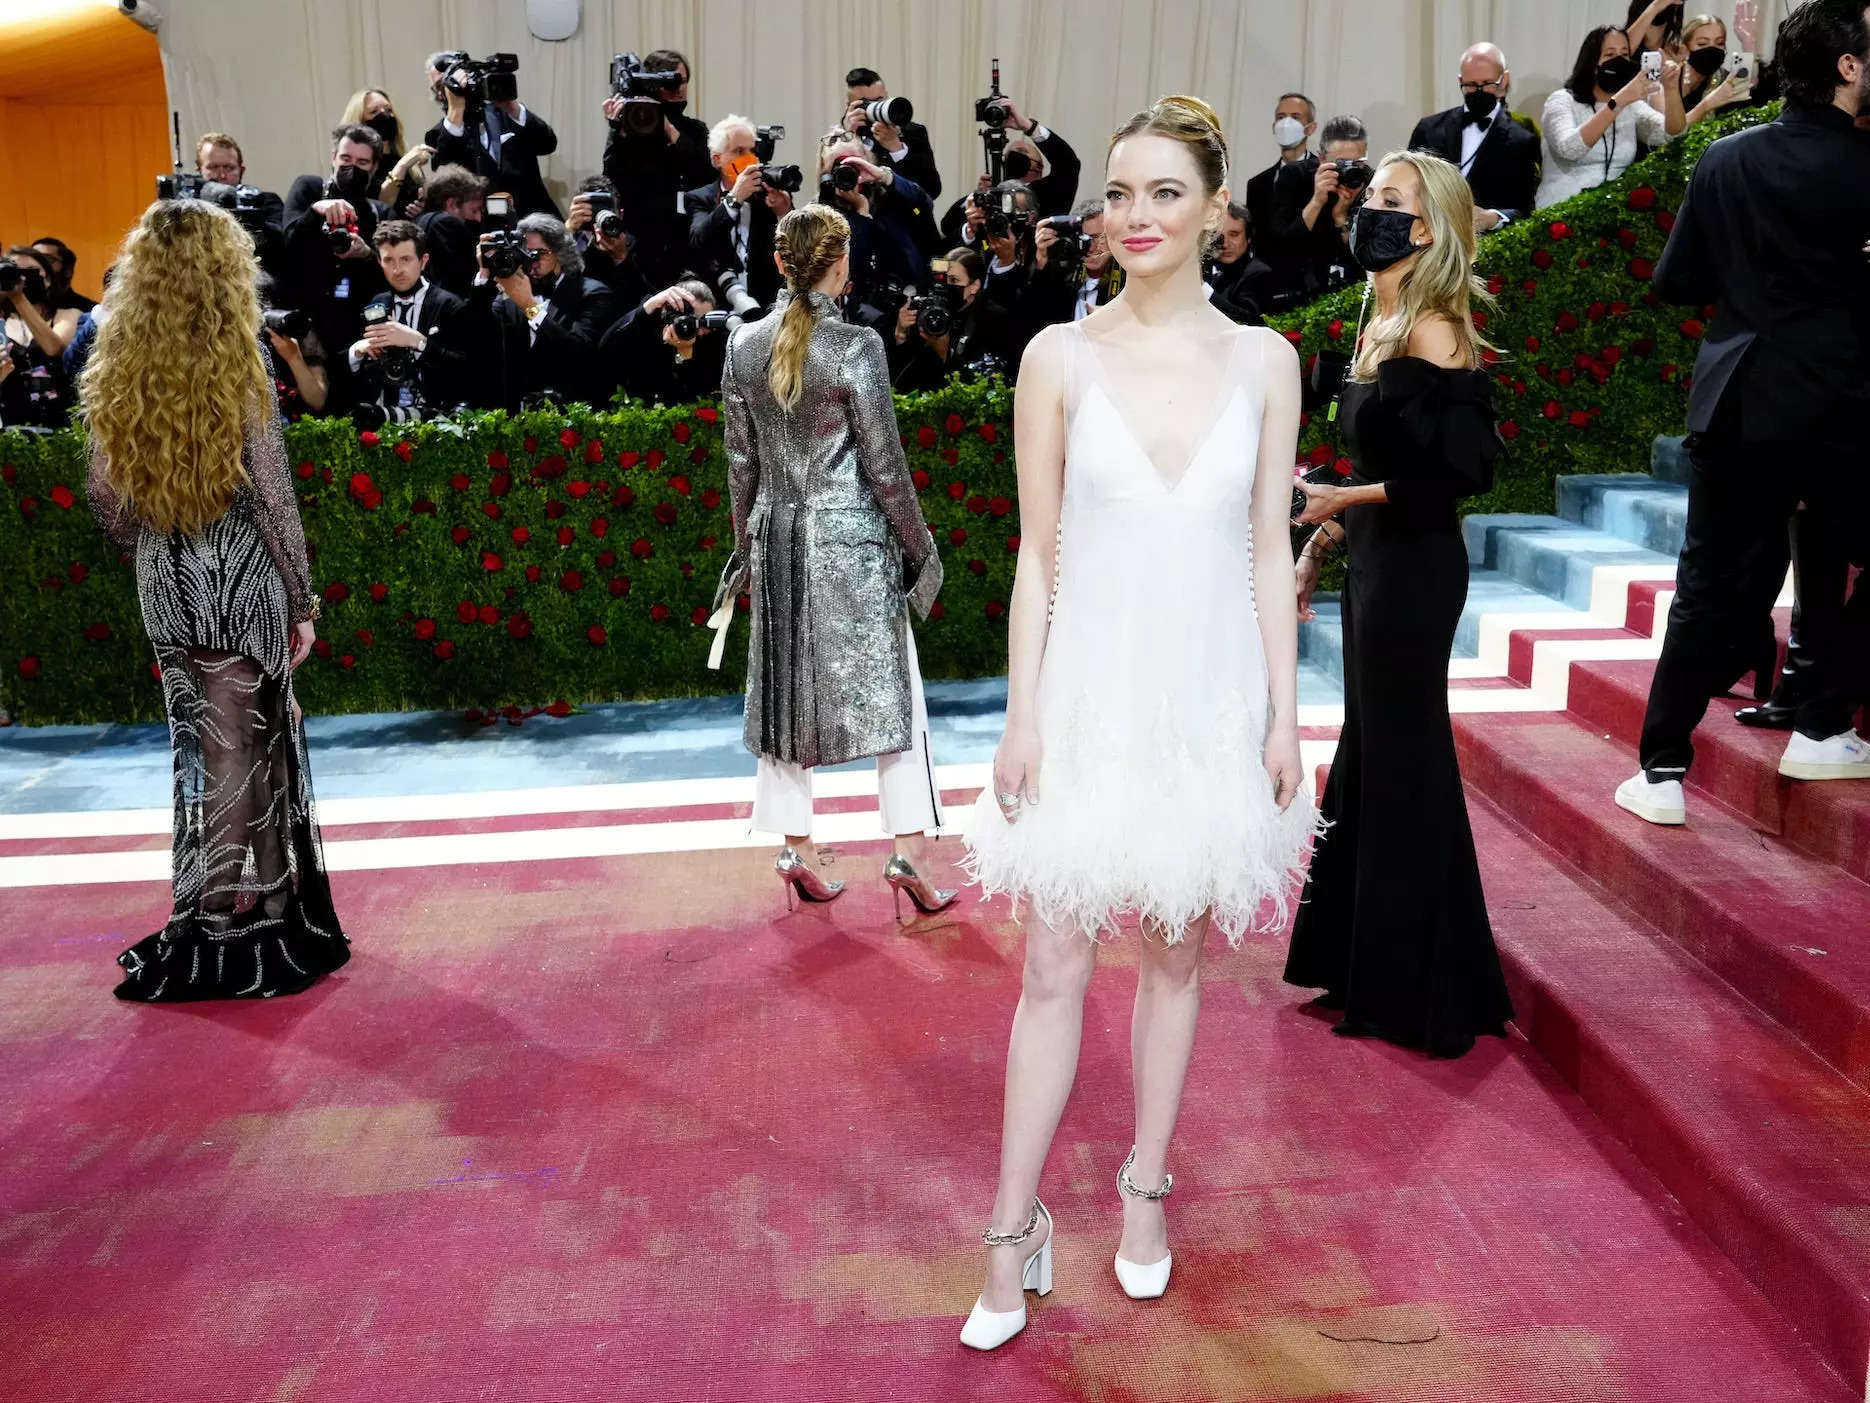 Emma Stone wears black and white for Cruella premiere red carpet